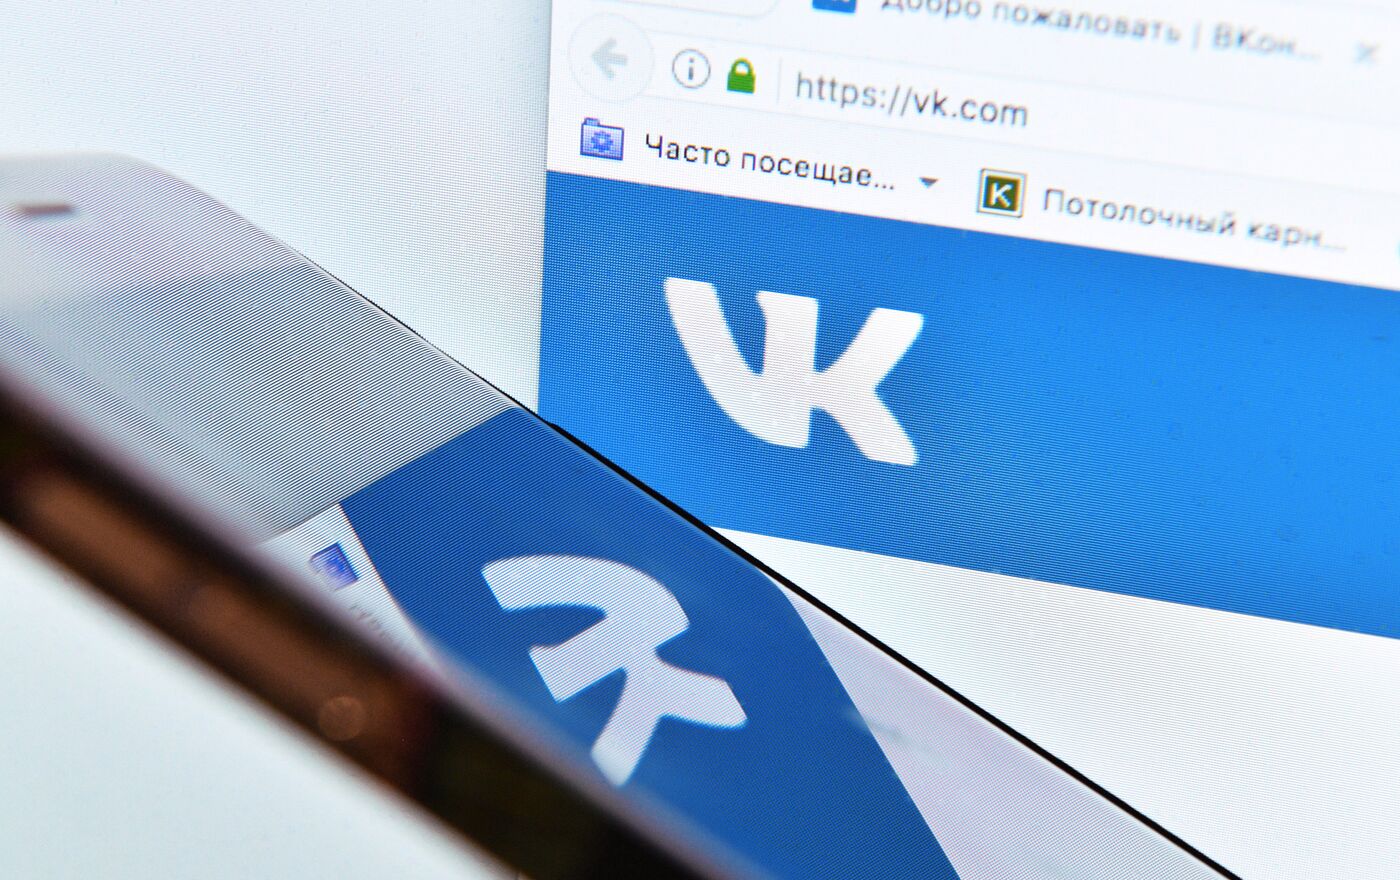 La racha sigue: VK.com es atacada y quedan expuestos los datos